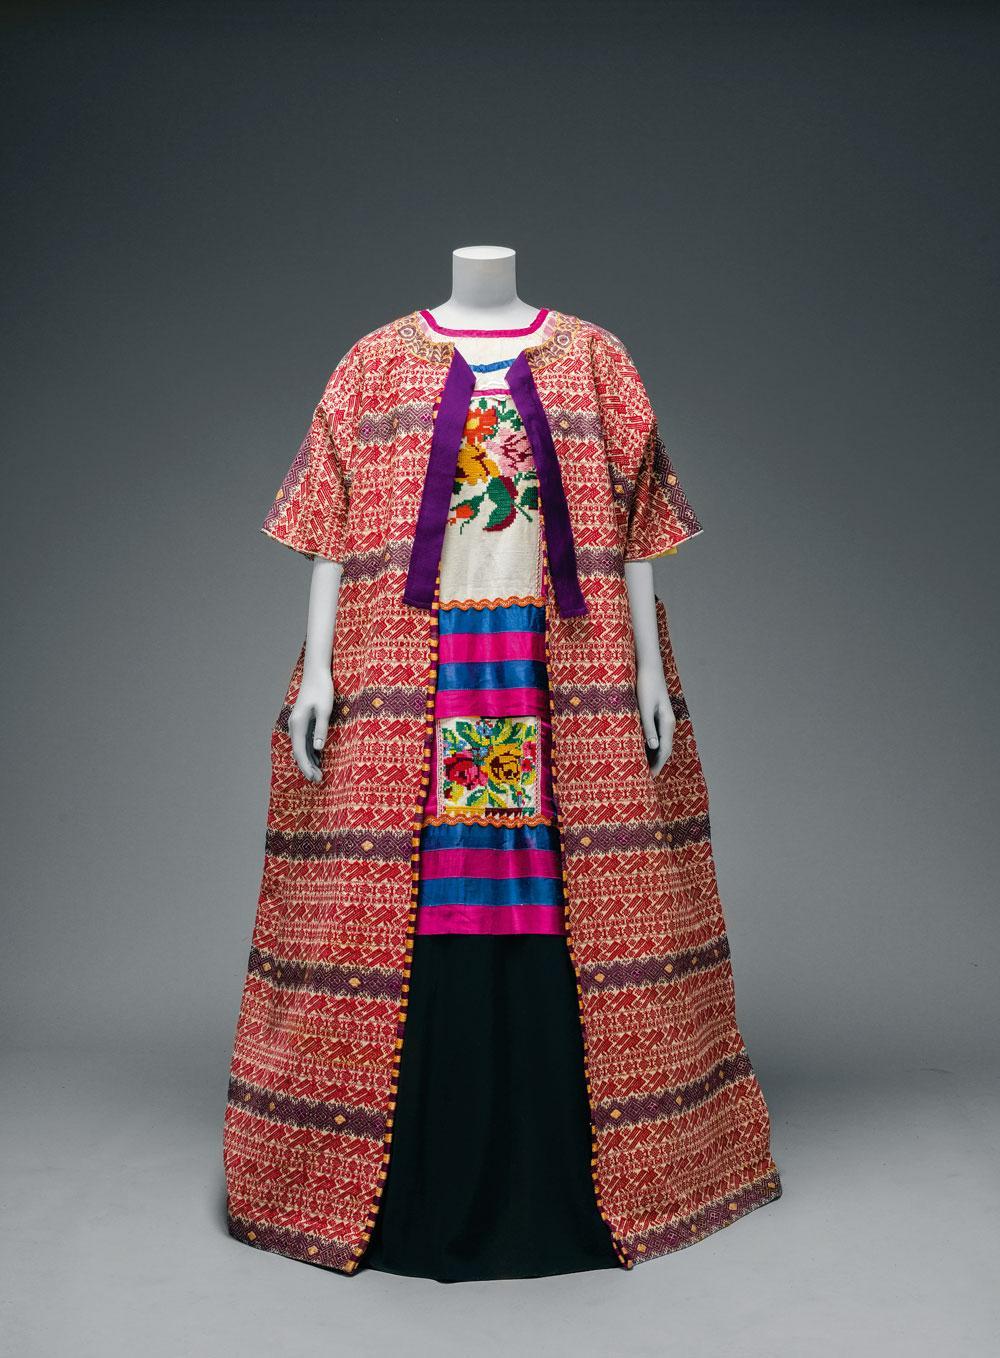 Katoenen mantel uit Guatemela, gecombineerd met een blouse uit Oaxaca en een enkellange rok, in het V&A Museum.